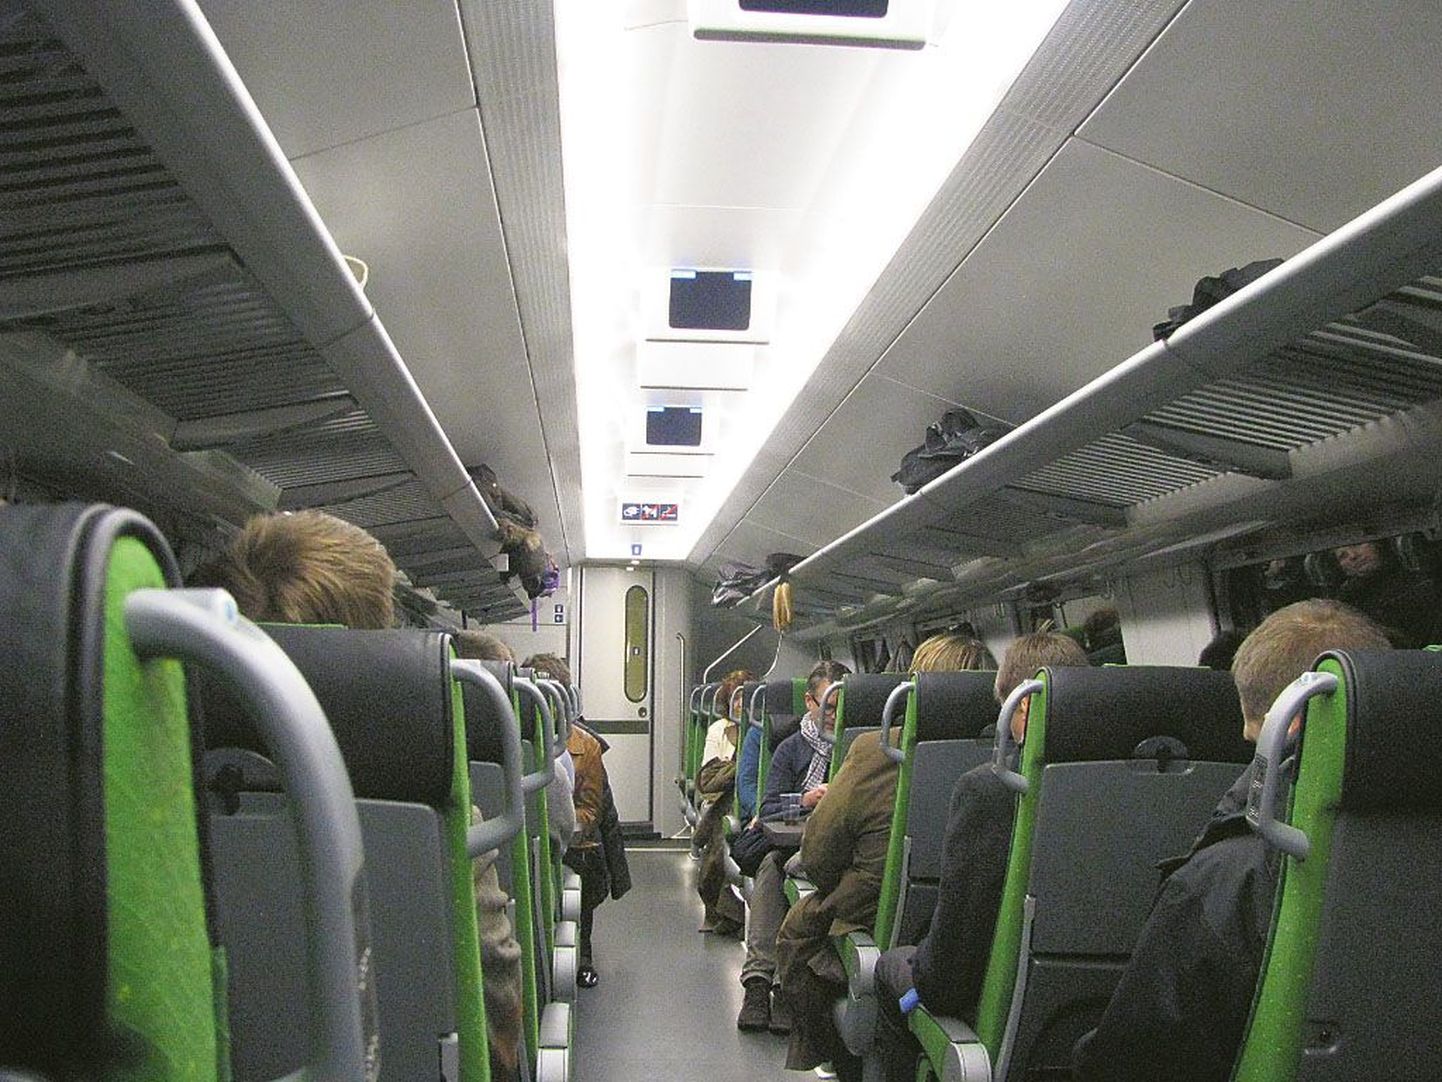 Kiirrongi mugavas vagunis näevad reisijad tabloodelt kellaaega ja rongi liikumise kiirust igal ajahetkel.